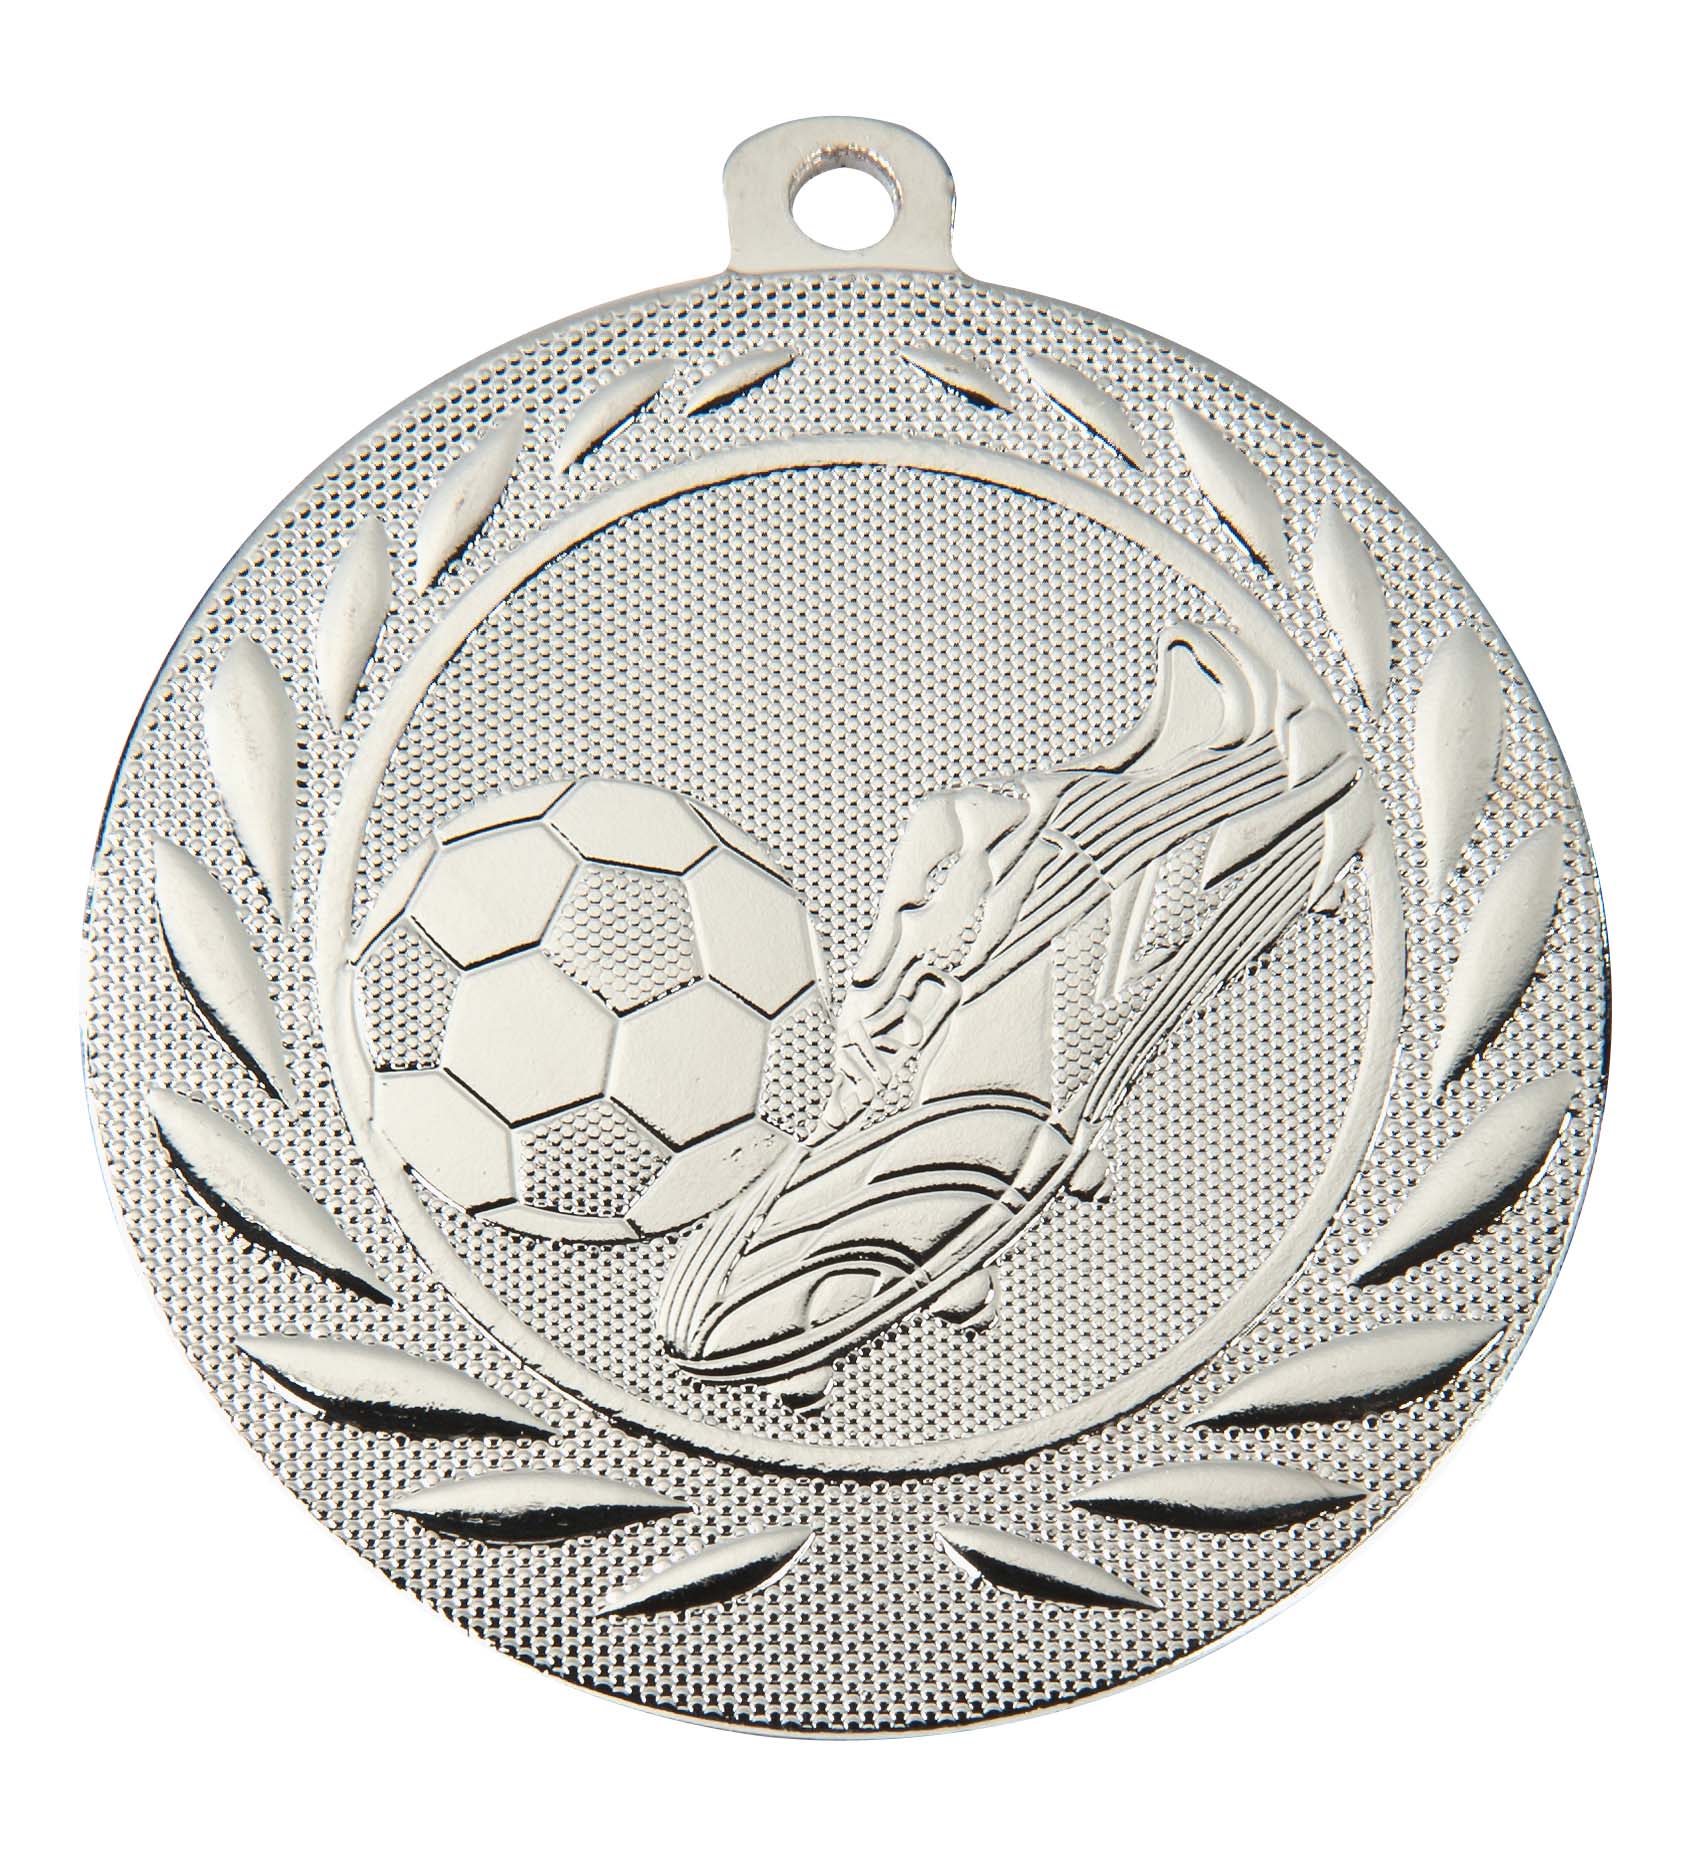 Fußball Medaille DI5000B inkl. Band und Beschriftung Silber Fertig montiert gegen Aufpreis